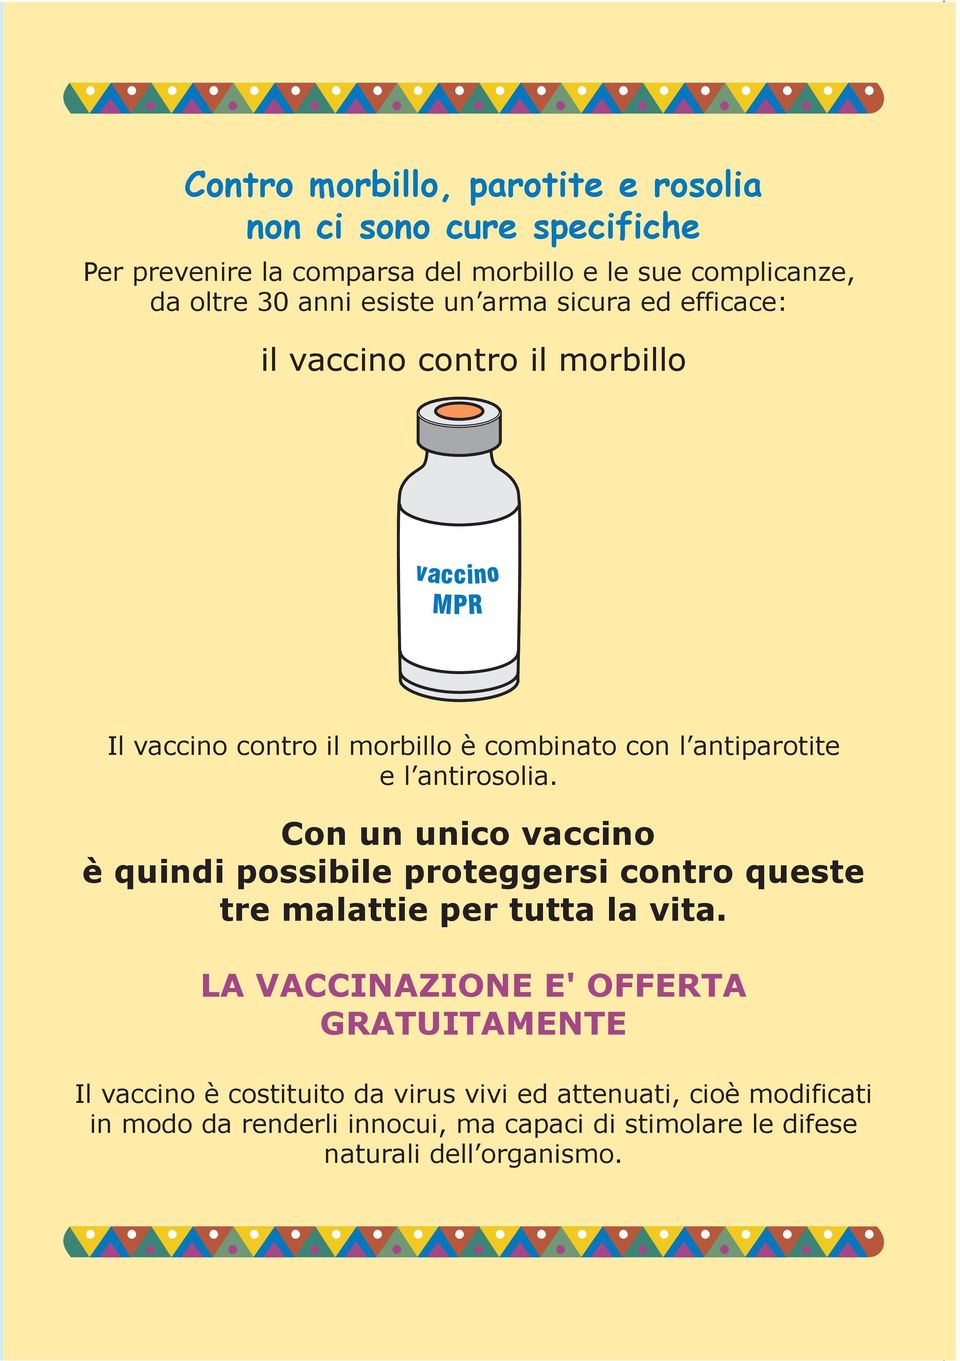 antirosolia. Con un unico vaccino è quindi possibile proteggersi contro queste tre malattie per tutta la vita.